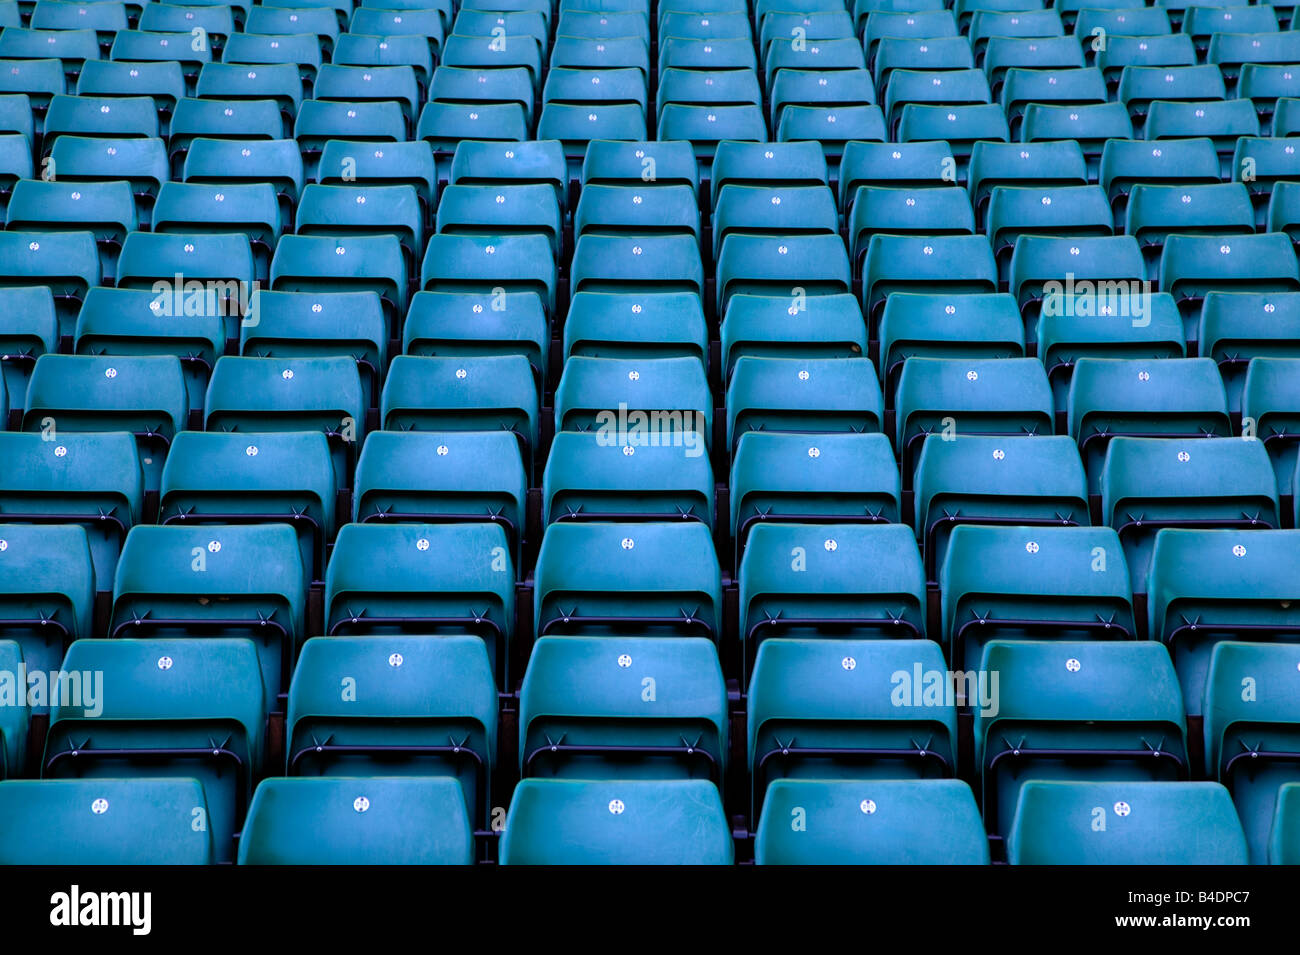 Des rangées de sièges bleus vides dans un stade Banque D'Images